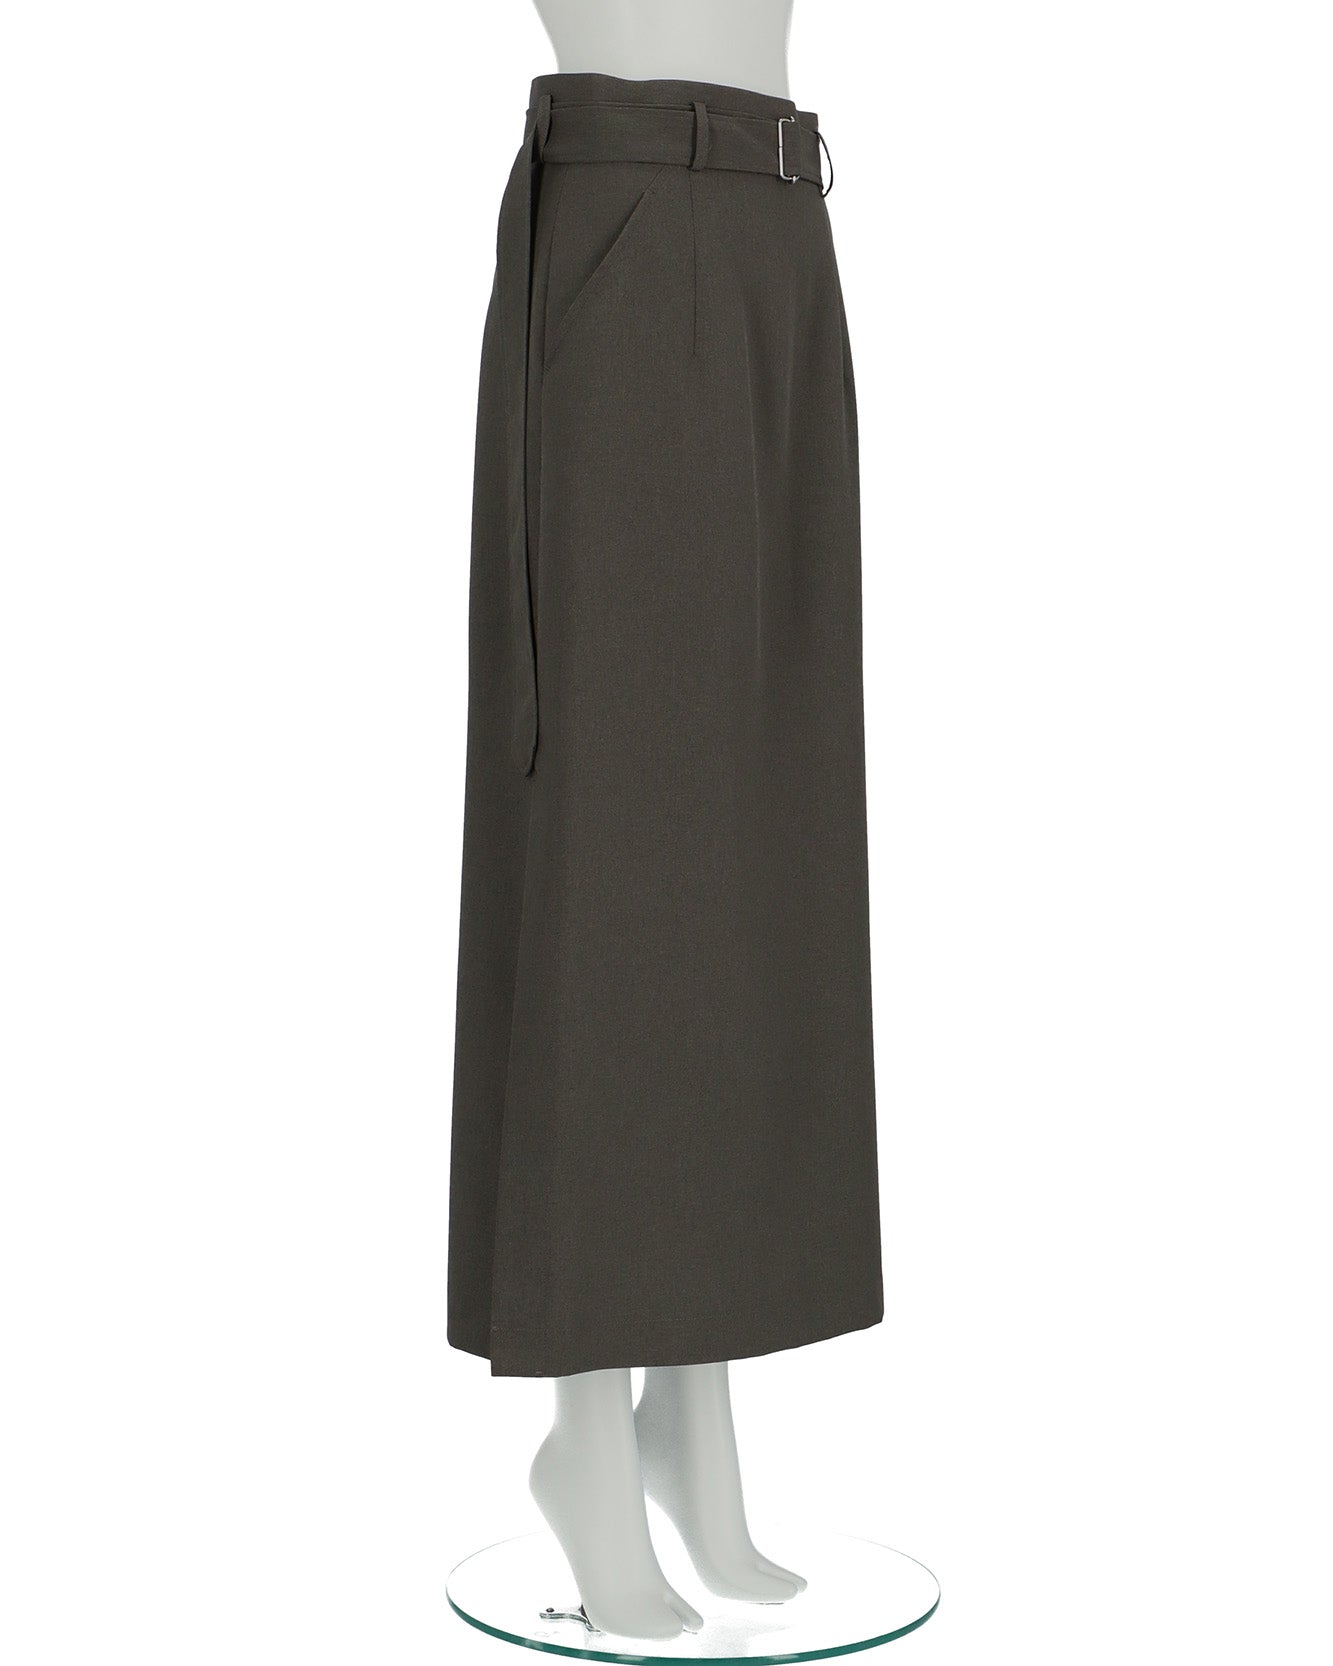 ≪在庫販売≫ semi-tight skirt（セミタイトスカート）≪2023年11月15日15:00販売開始≫